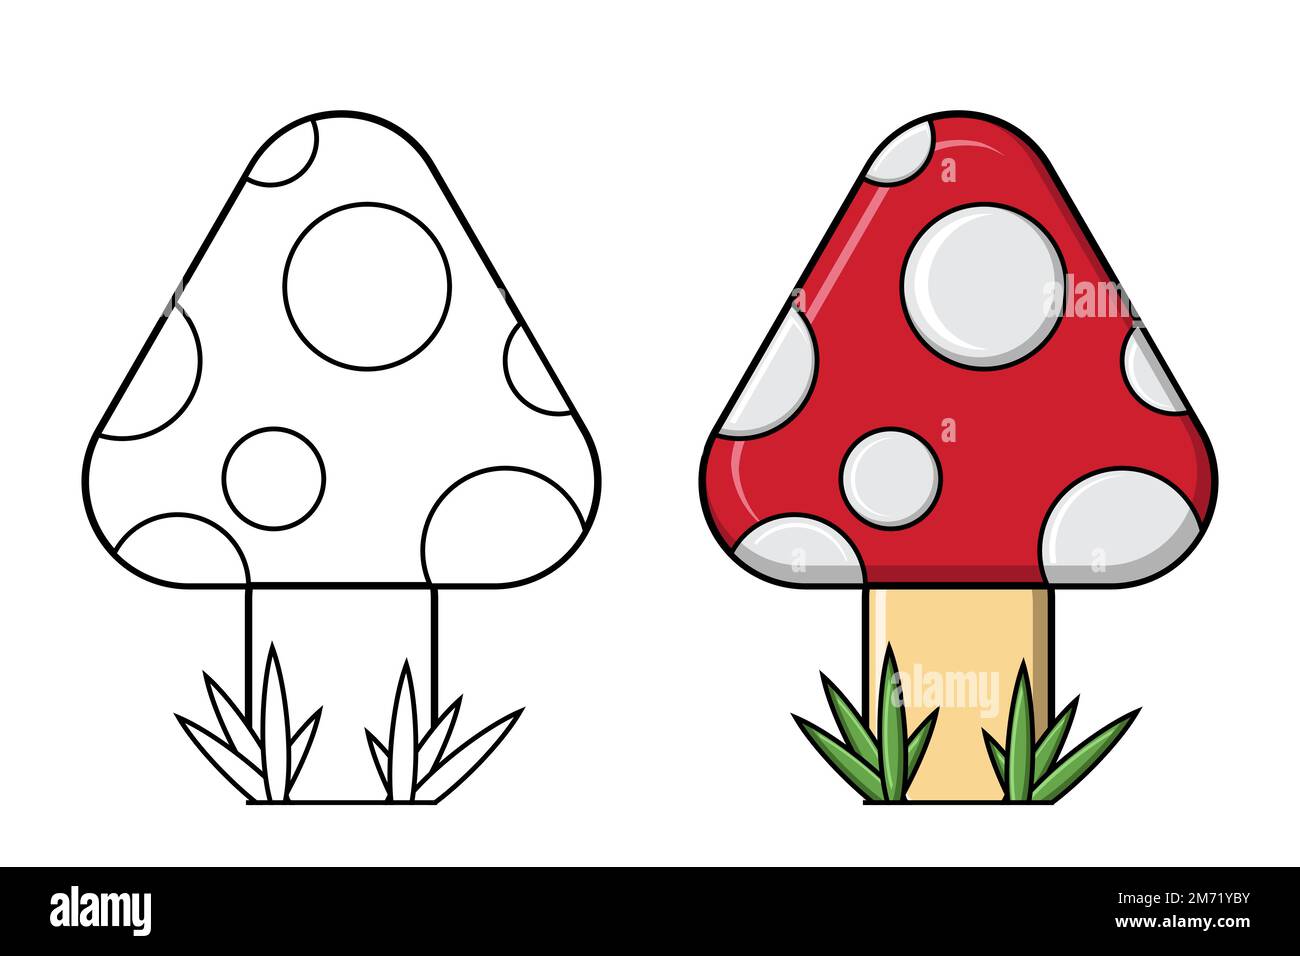 Mushroom Drawing Easy || How to draw a Mashrum easy step by step || Mushroom  Drawing Colour - YouTube